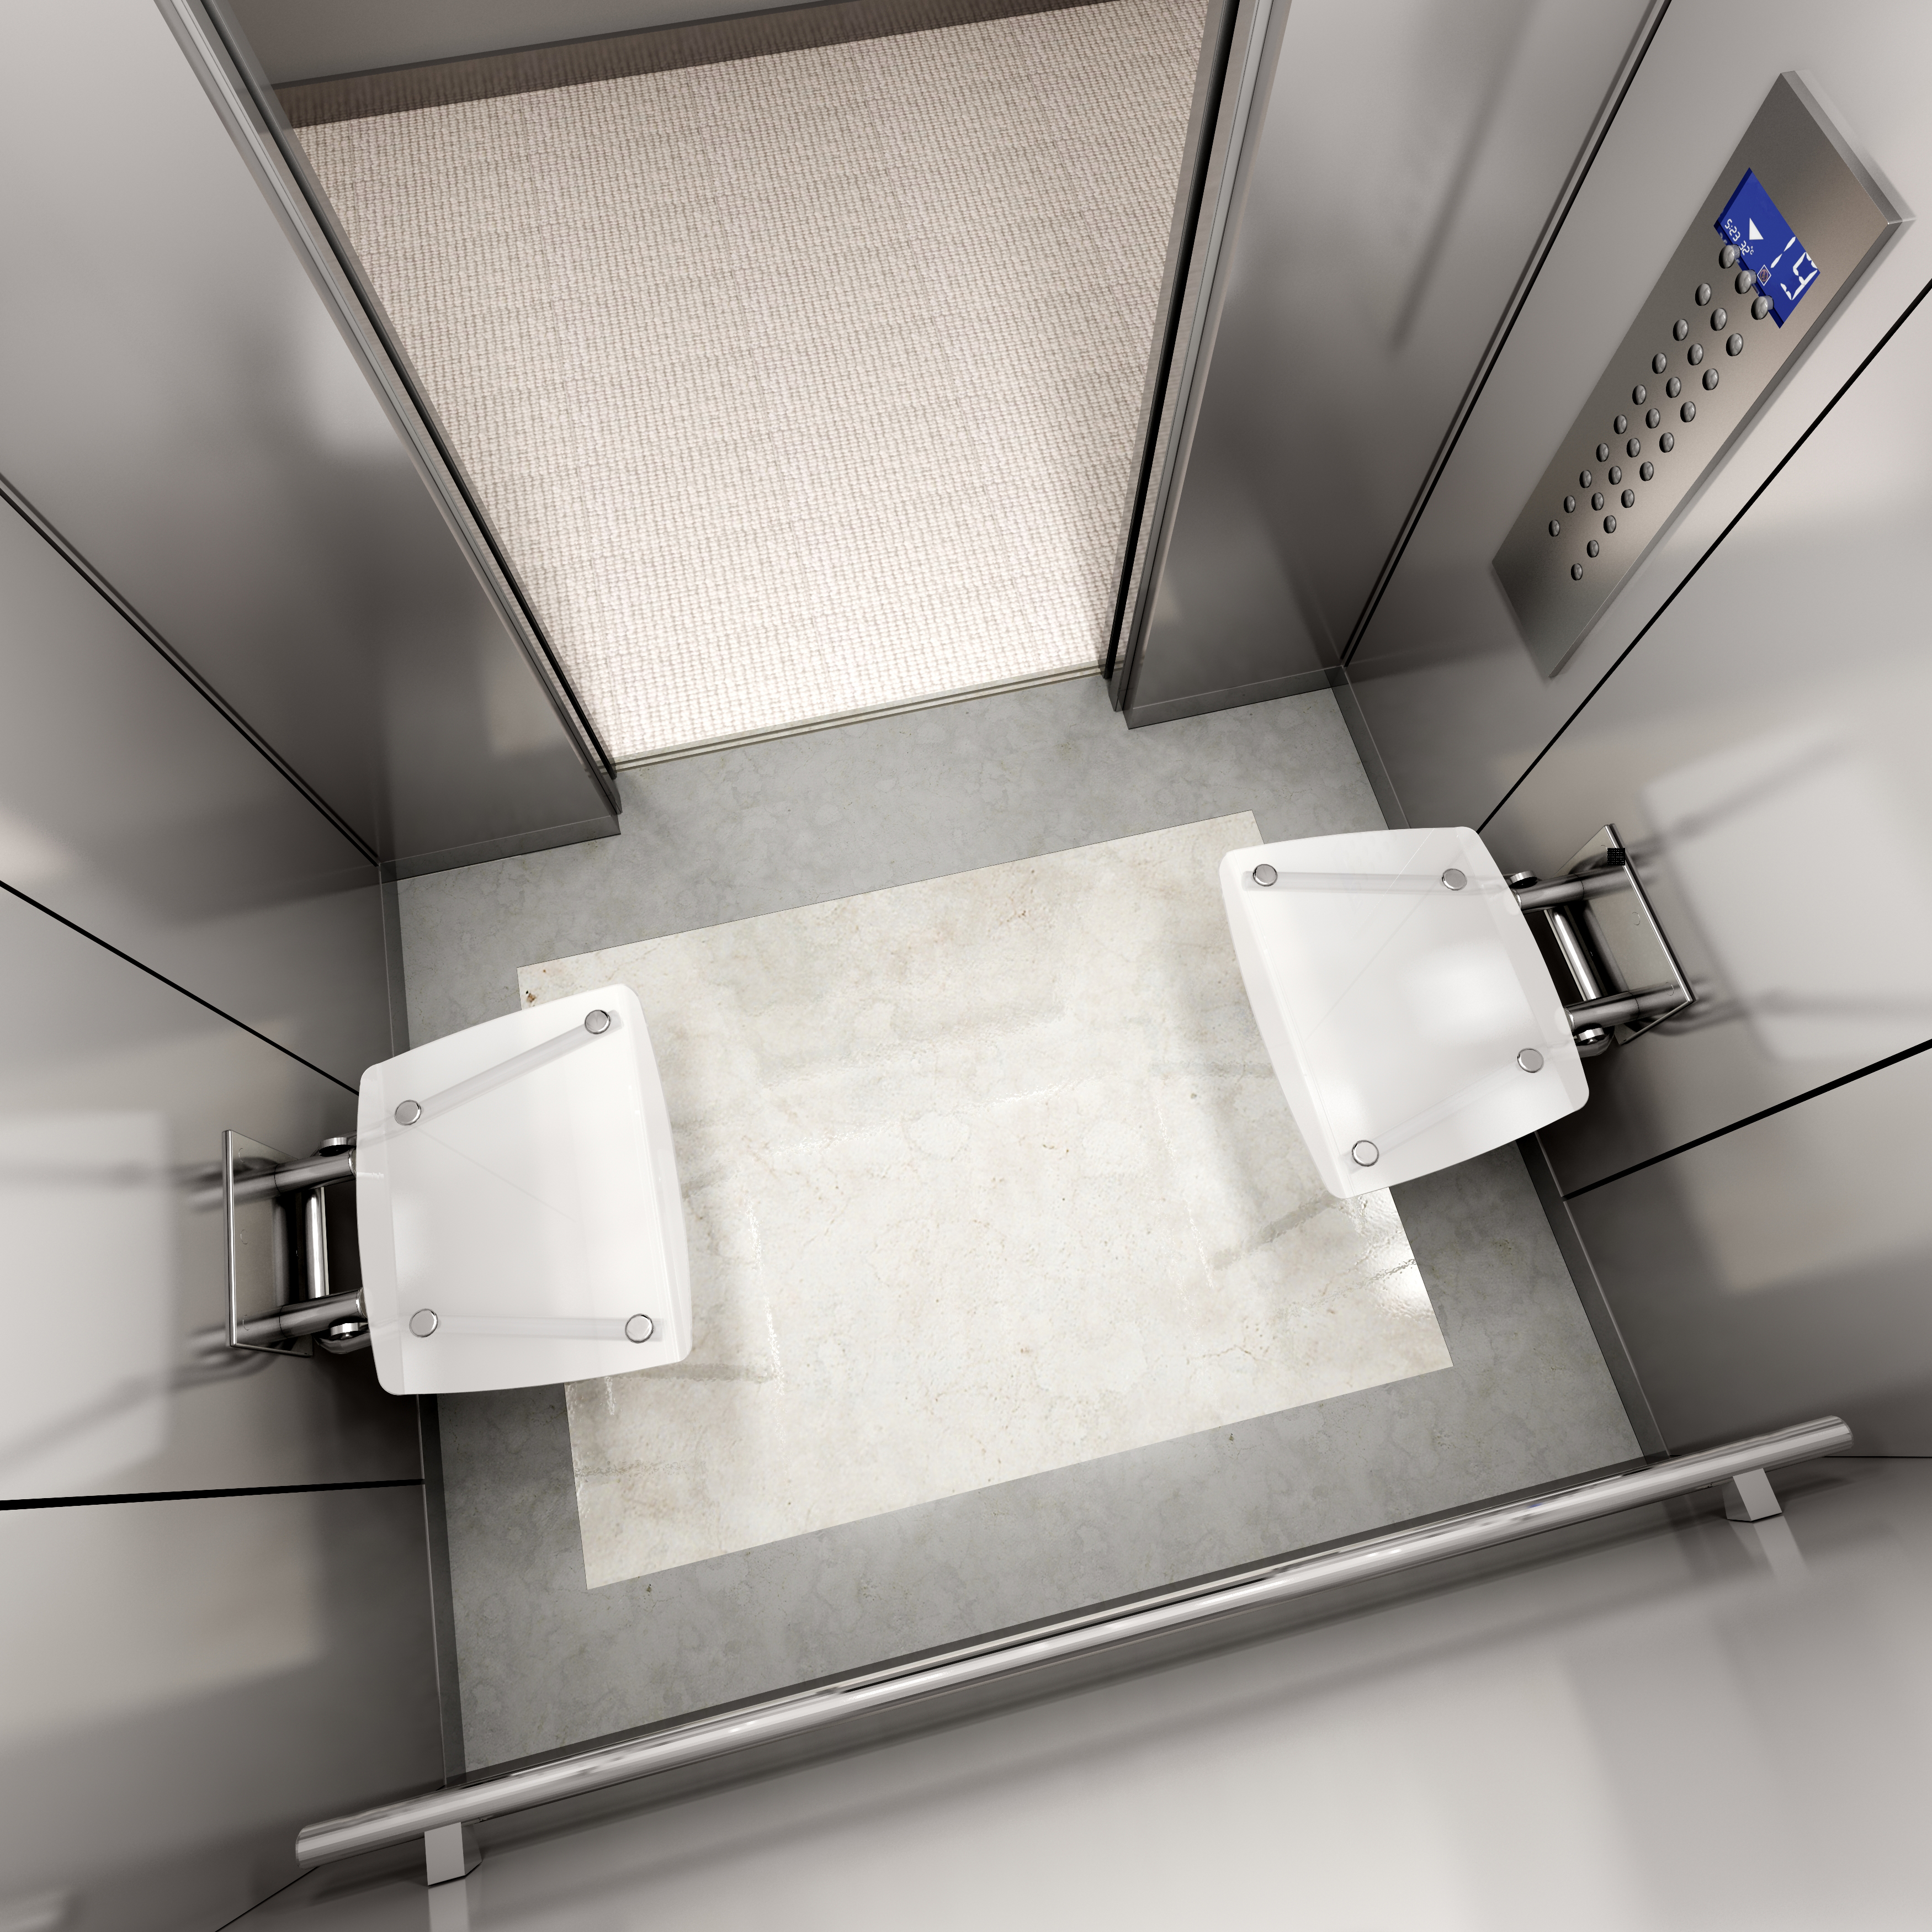 A multifunkciós RAVAK zuhanyülőke még a liftekben is könnyedén elhelyezhető és biztonsággal használható.